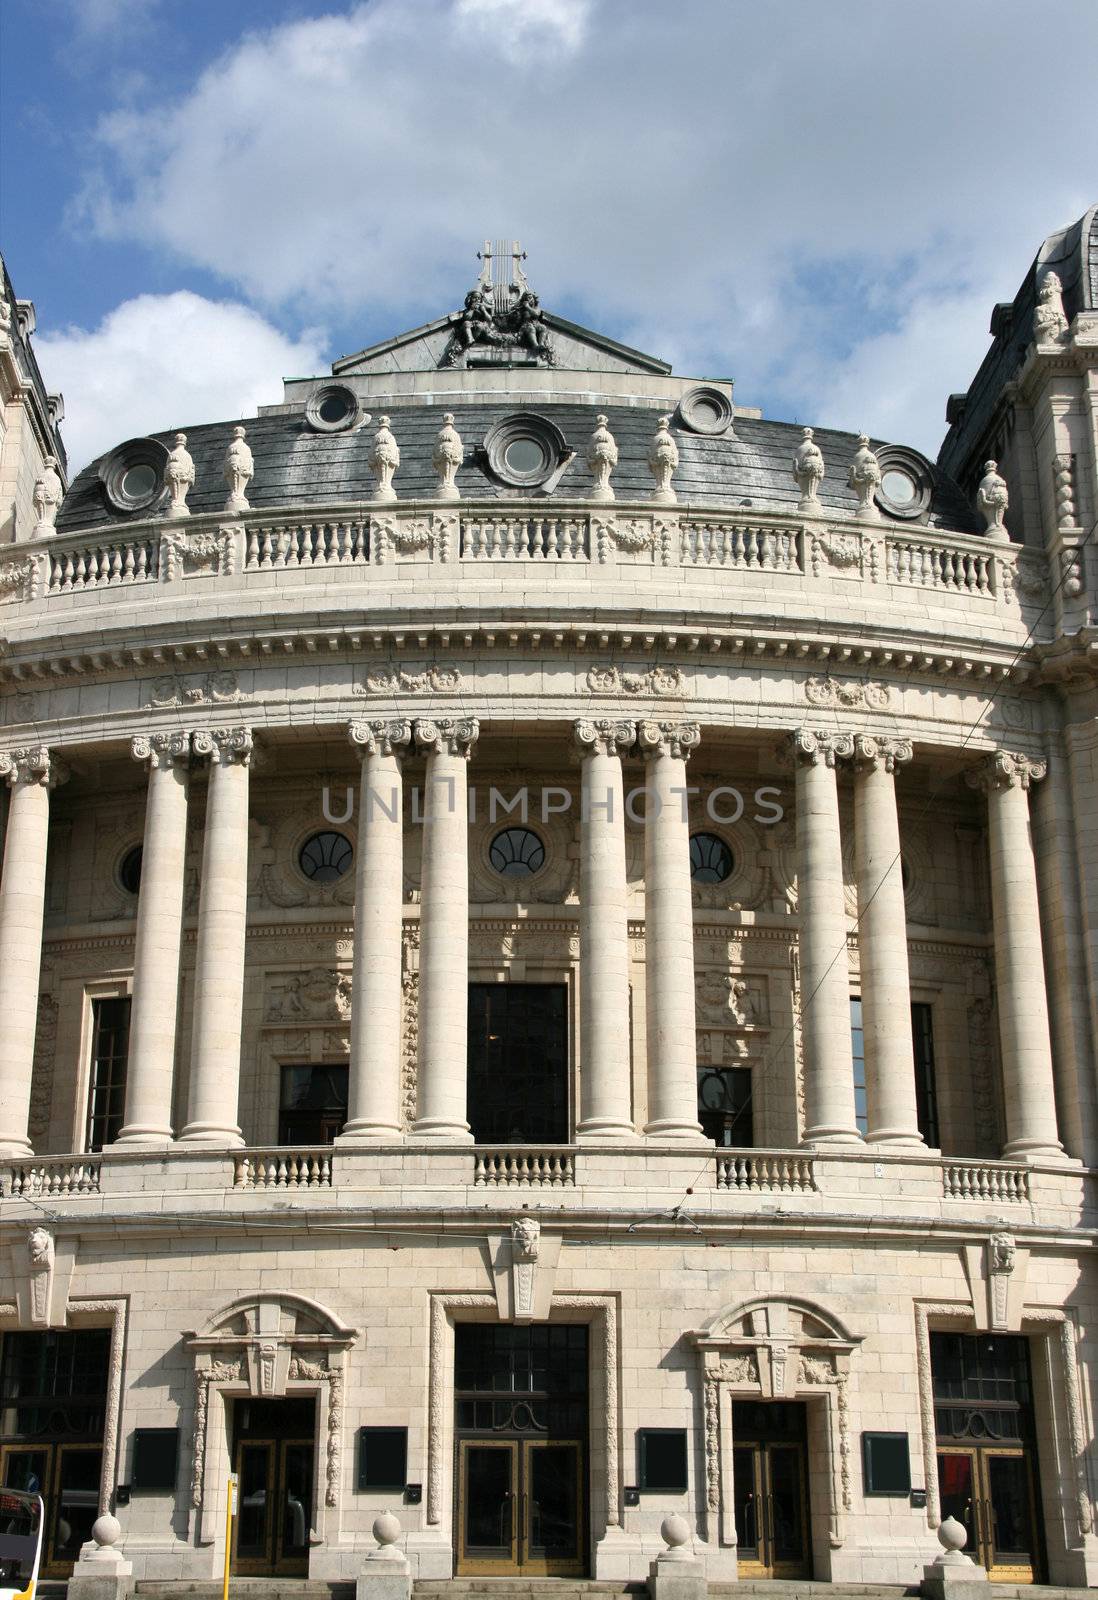 Old opera house in Antwerp, Flanders - Belgium